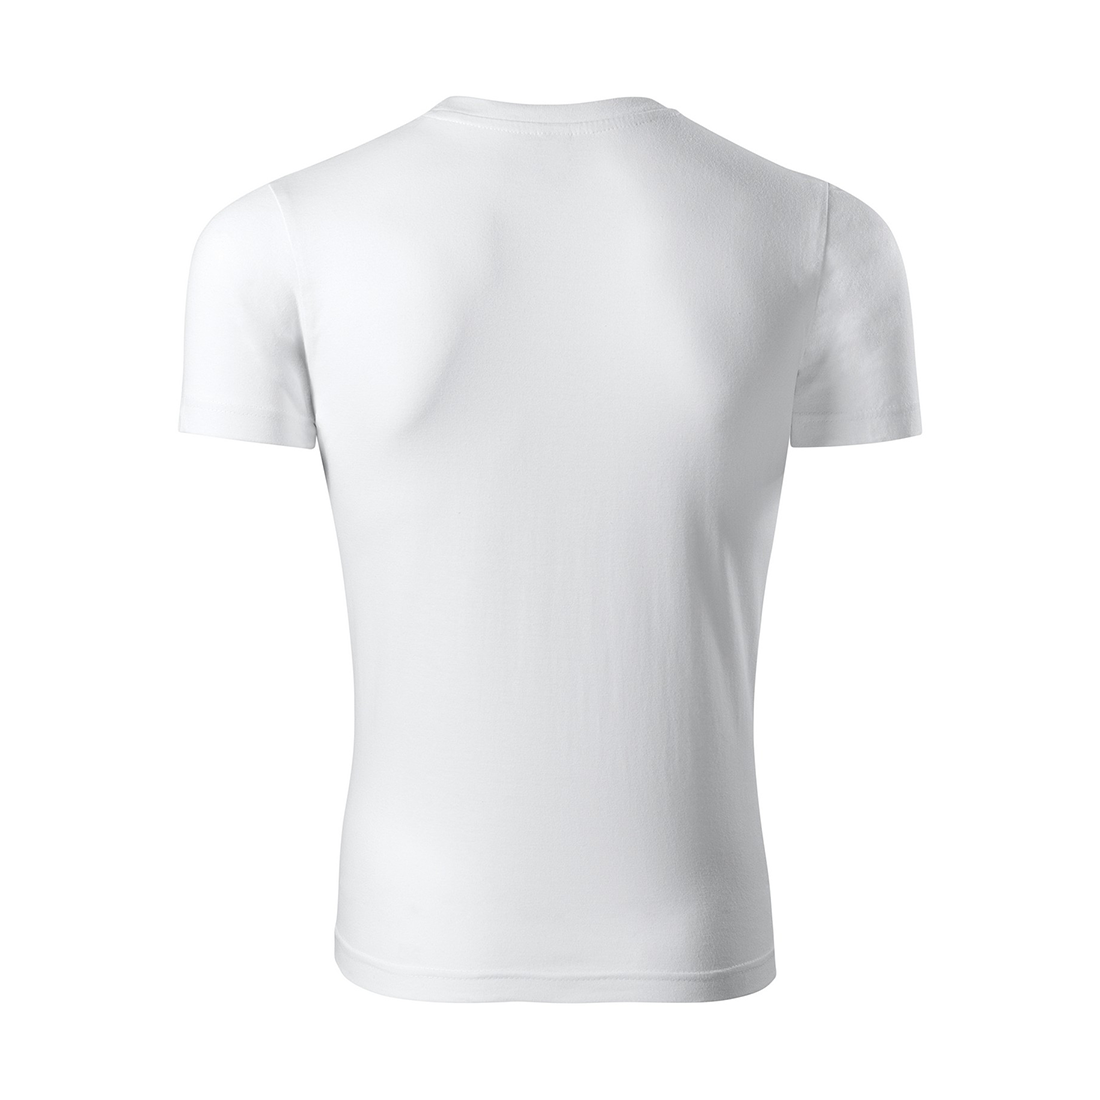 Camiseta unisex PEAK - Ropa de protección